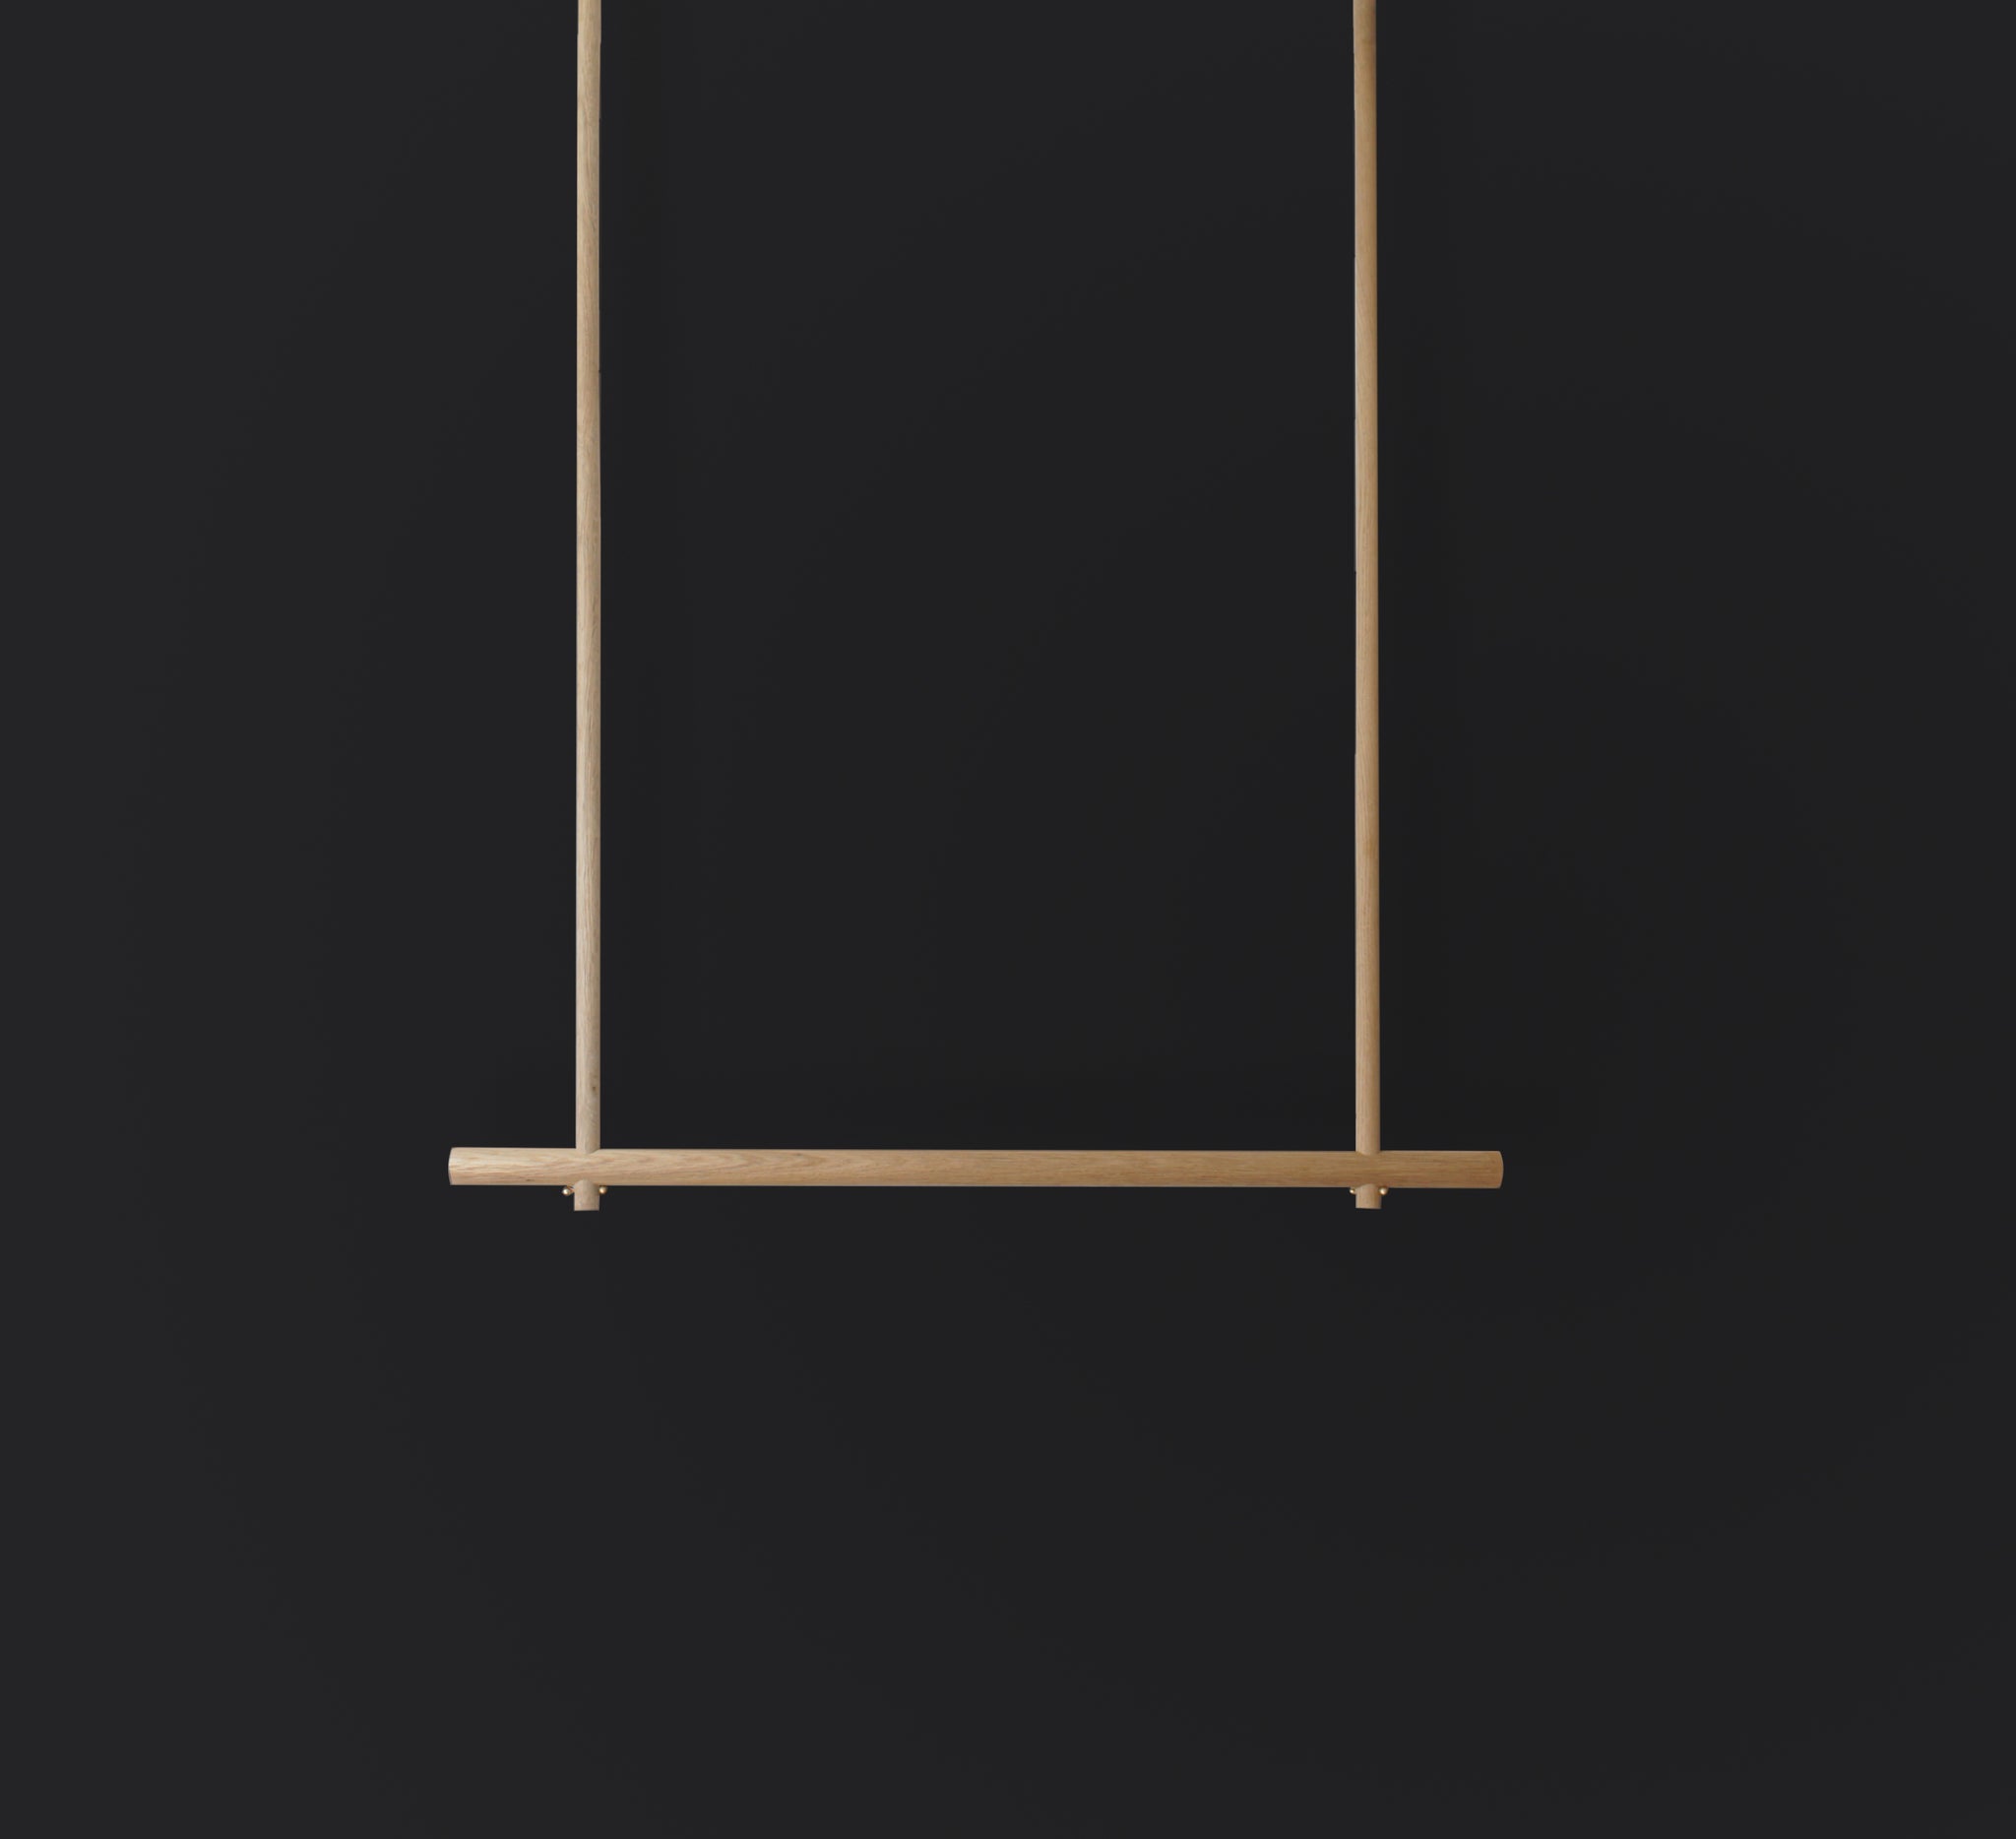 Eiche Garderobe Hänger Kleiderschrank Oak hanger wardrobe minimalism minimalistic elegant Hängegarderobe